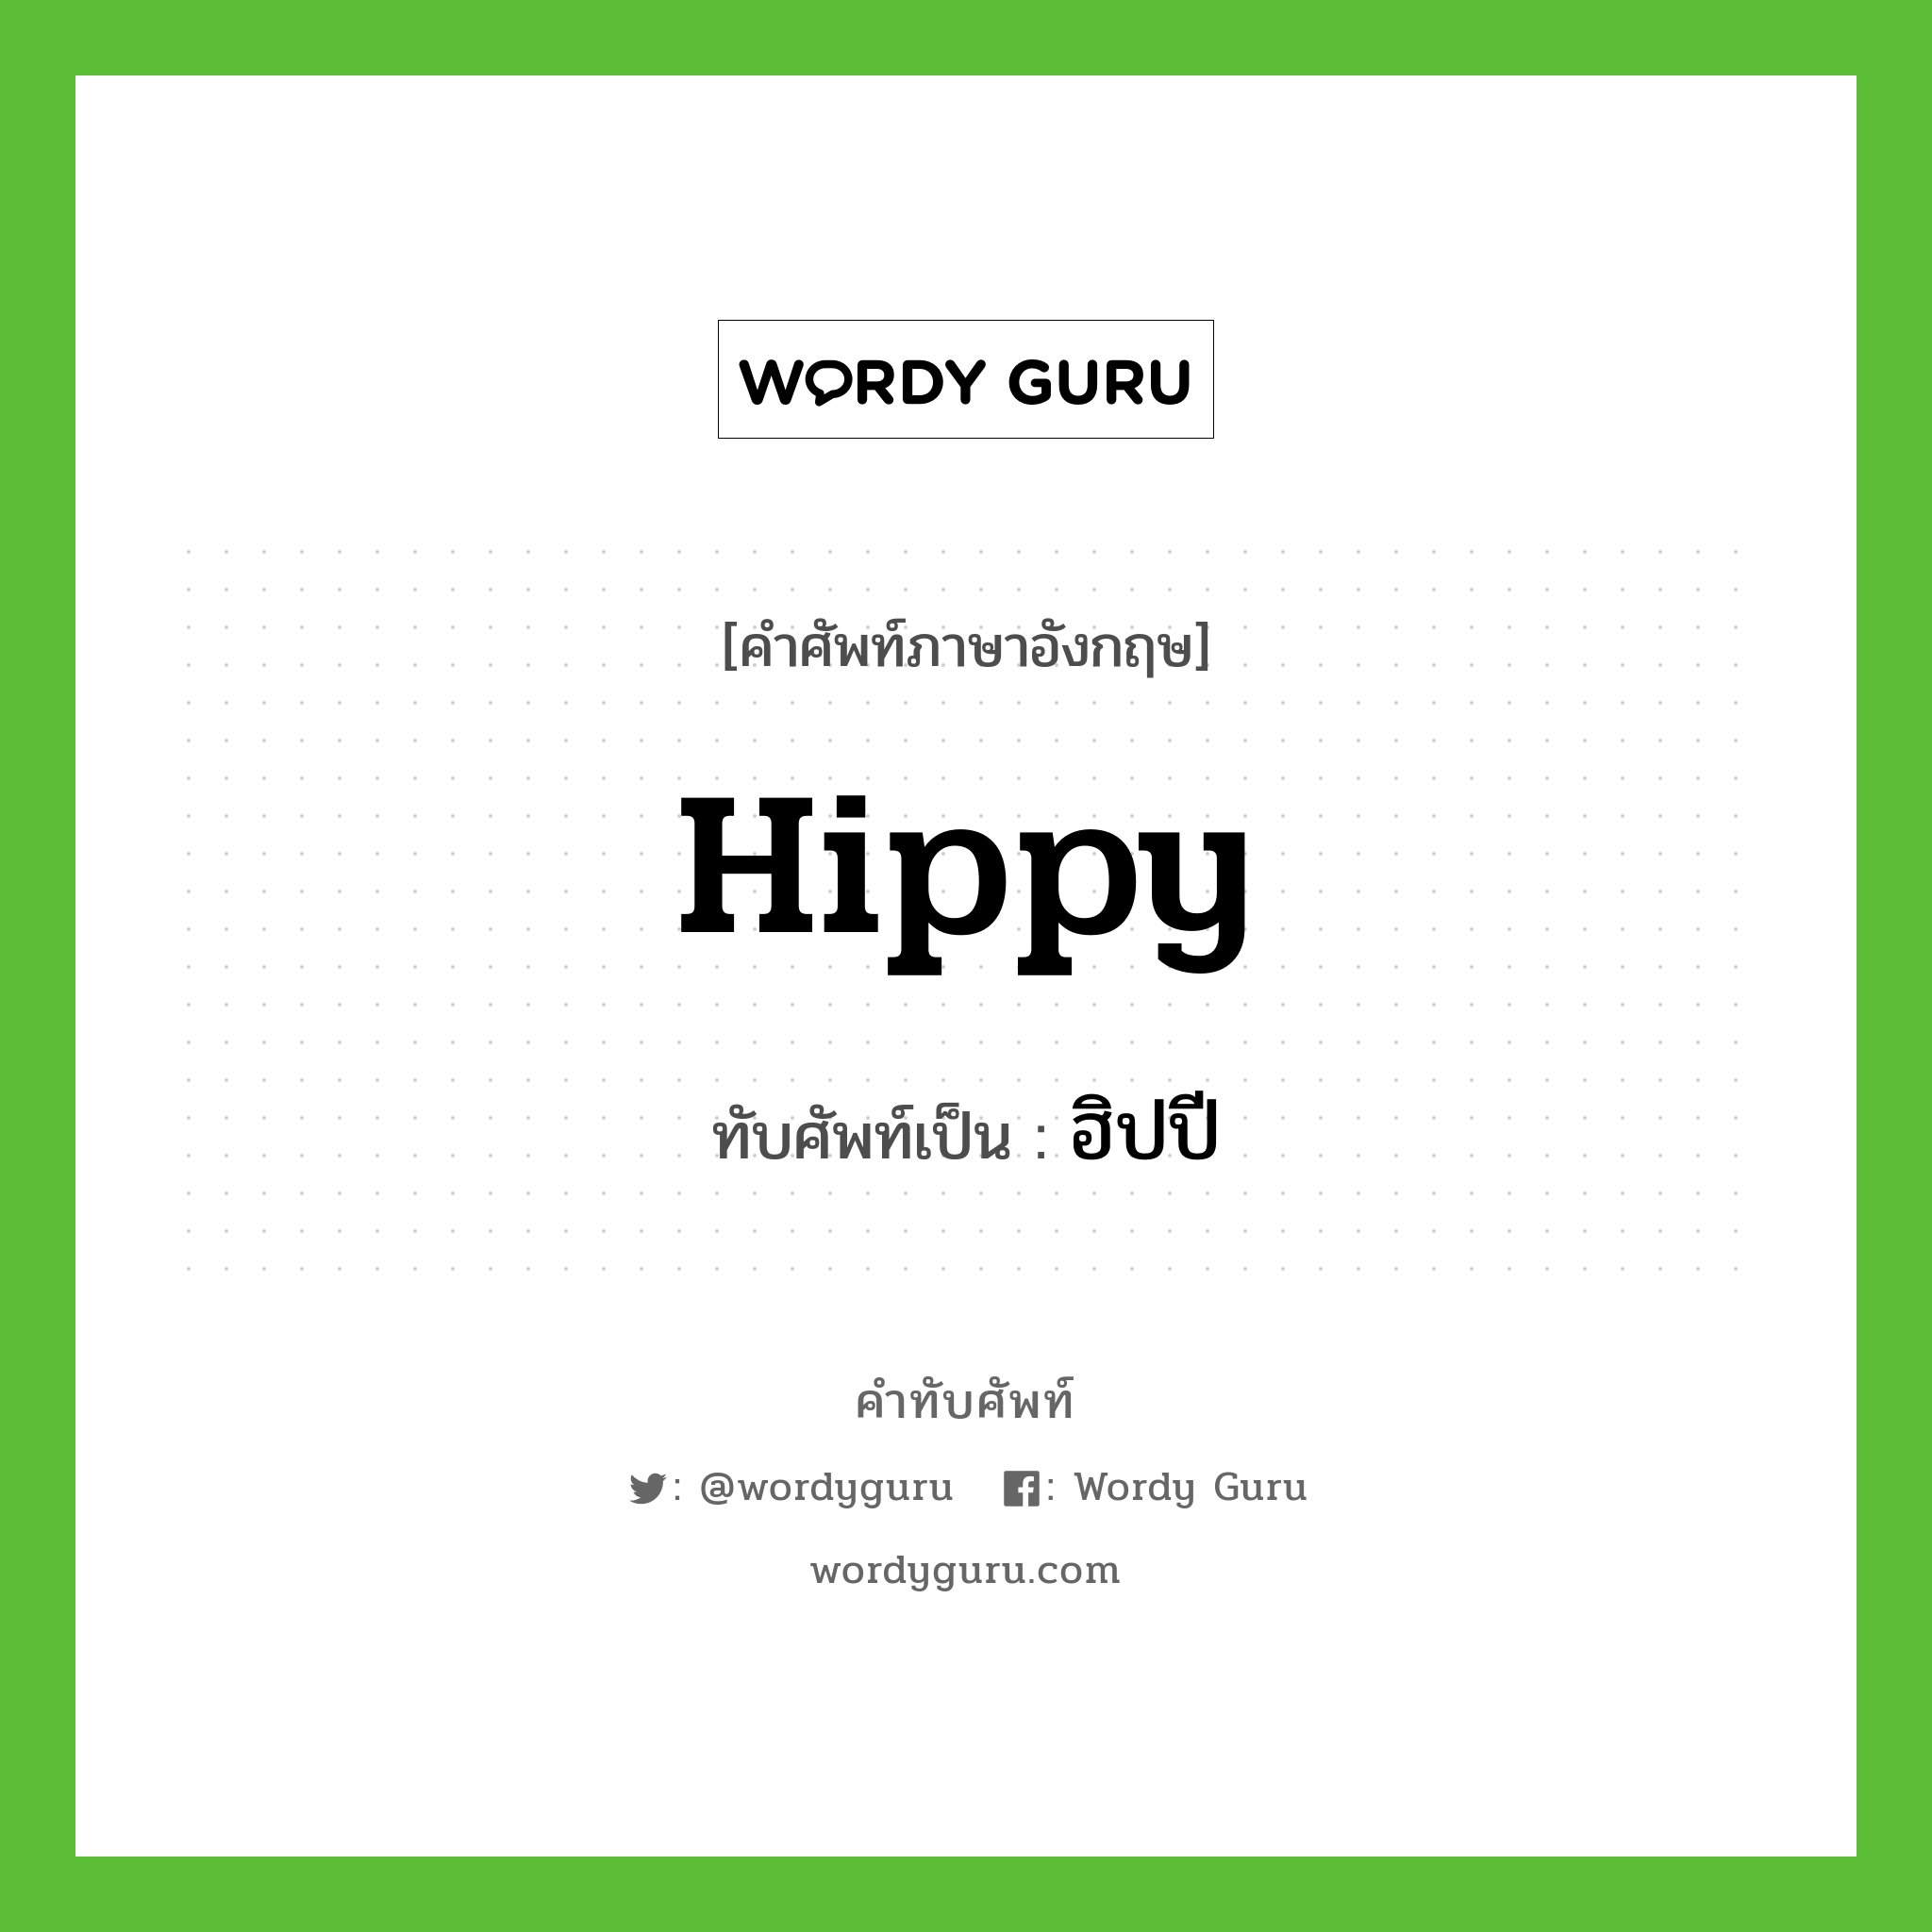 hippy เขียนเป็นคำไทยว่าอะไร?, คำศัพท์ภาษาอังกฤษ hippy ทับศัพท์เป็น ฮิปปี